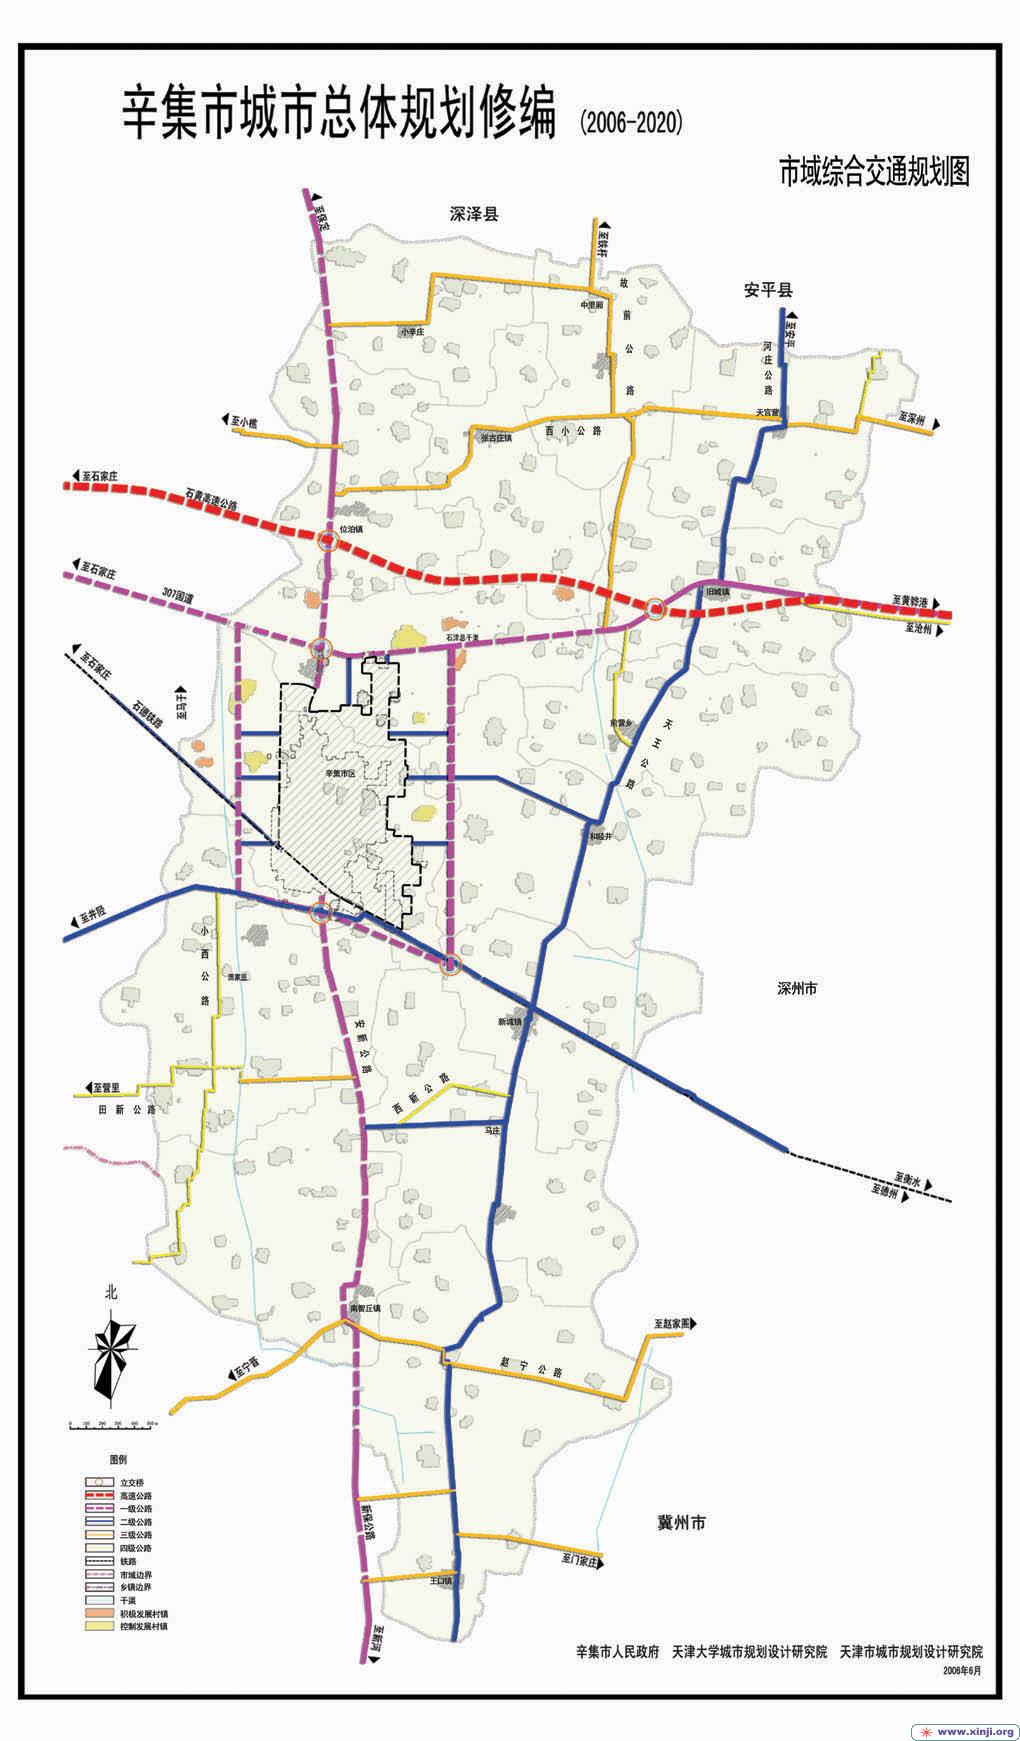 市域综合交通图 规划图|关注辛集规划 - 辛集社区